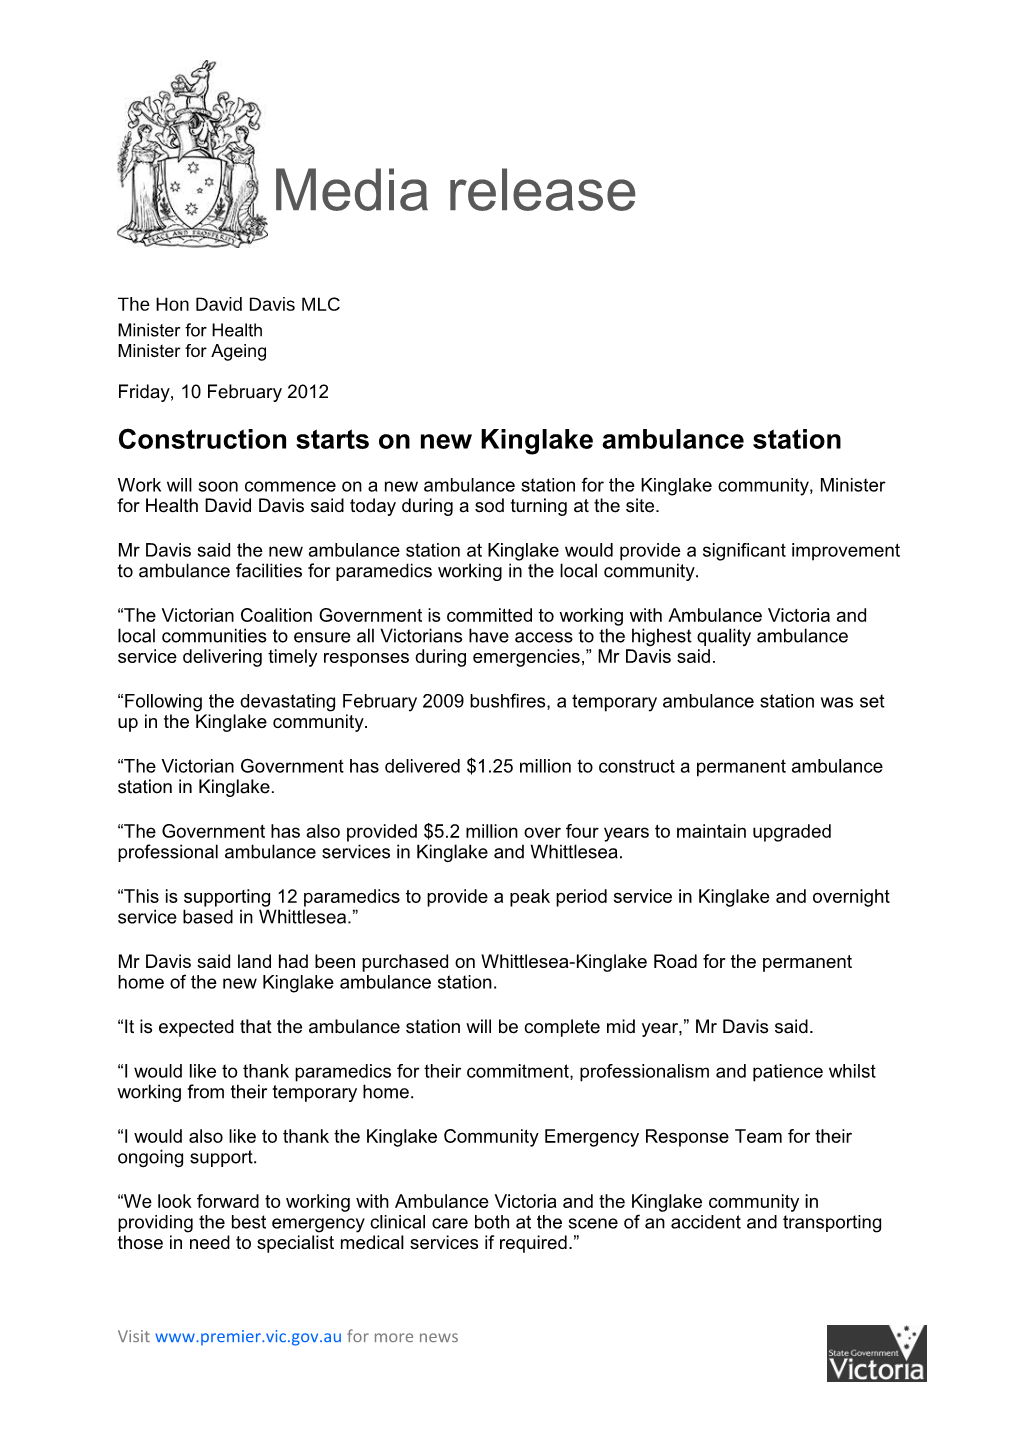 Construction Starts on New Kinglake Ambulance Station